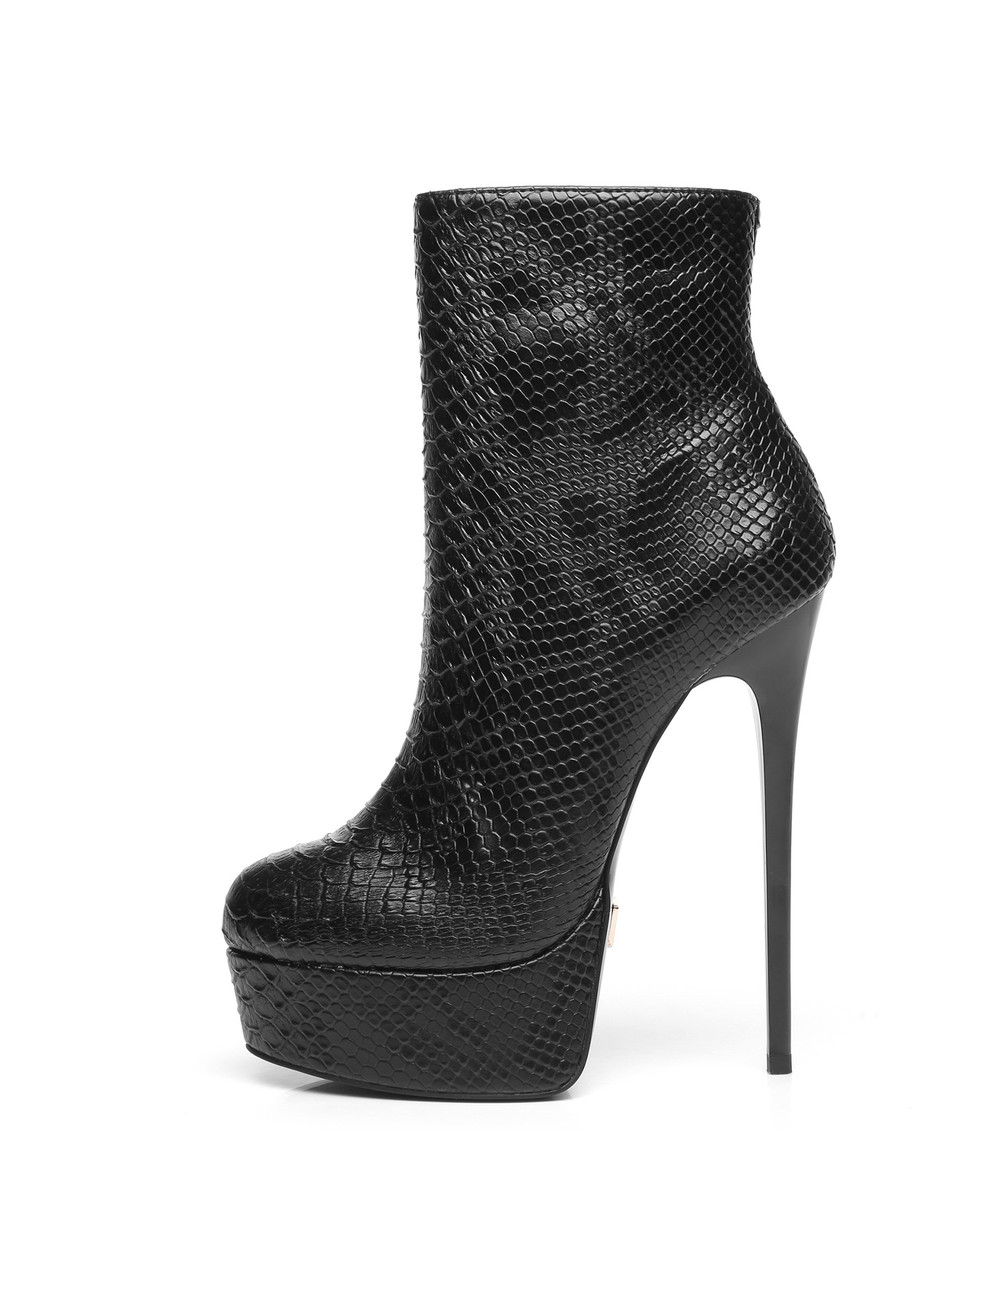 Giaro Black Snake Giaro "Galana" ankle boots  - new 2020